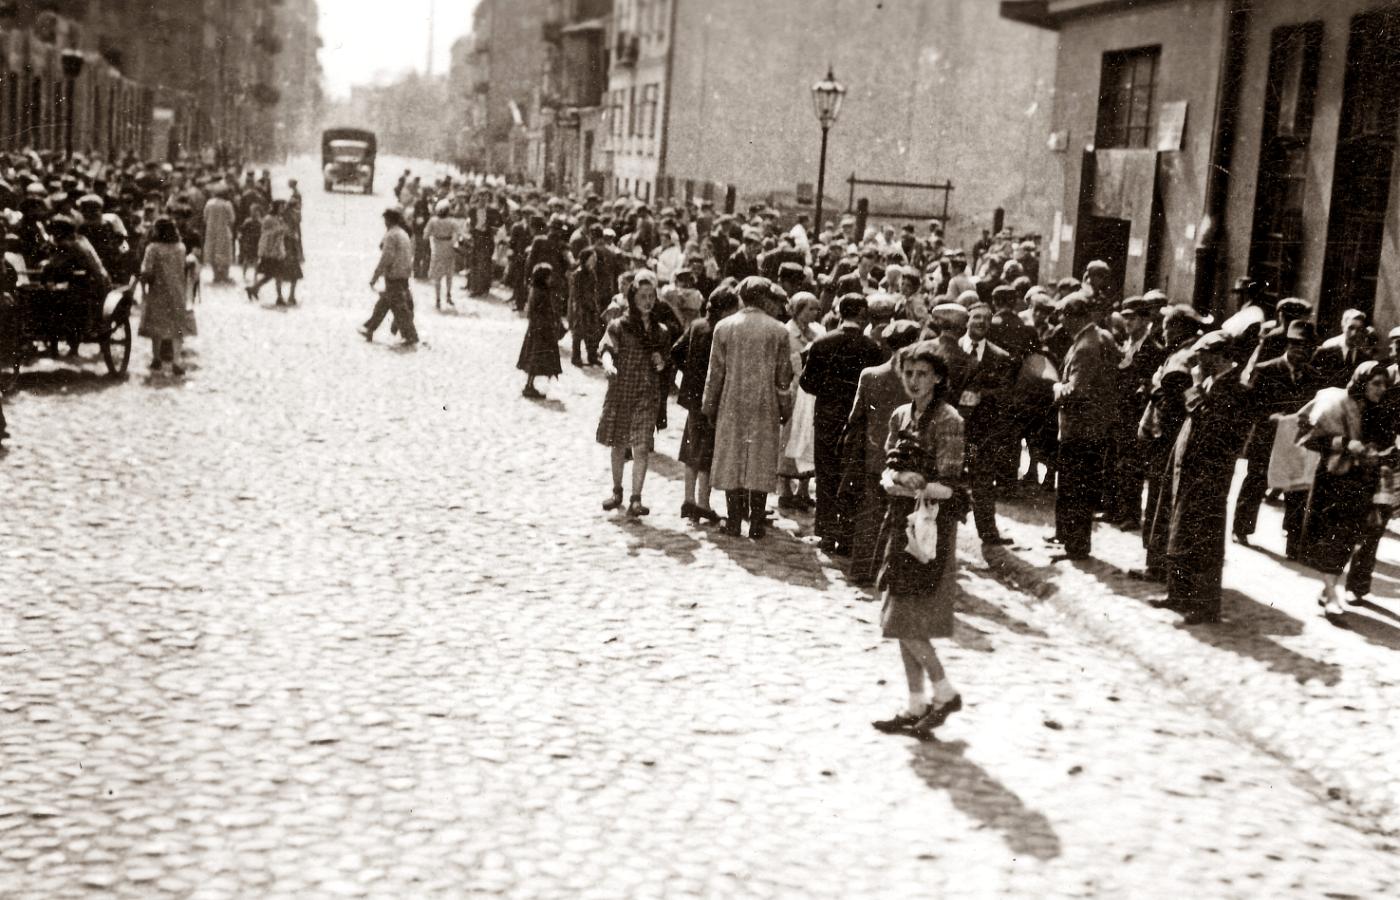 Getto warszawskie w czasie niemieckiej okupacji